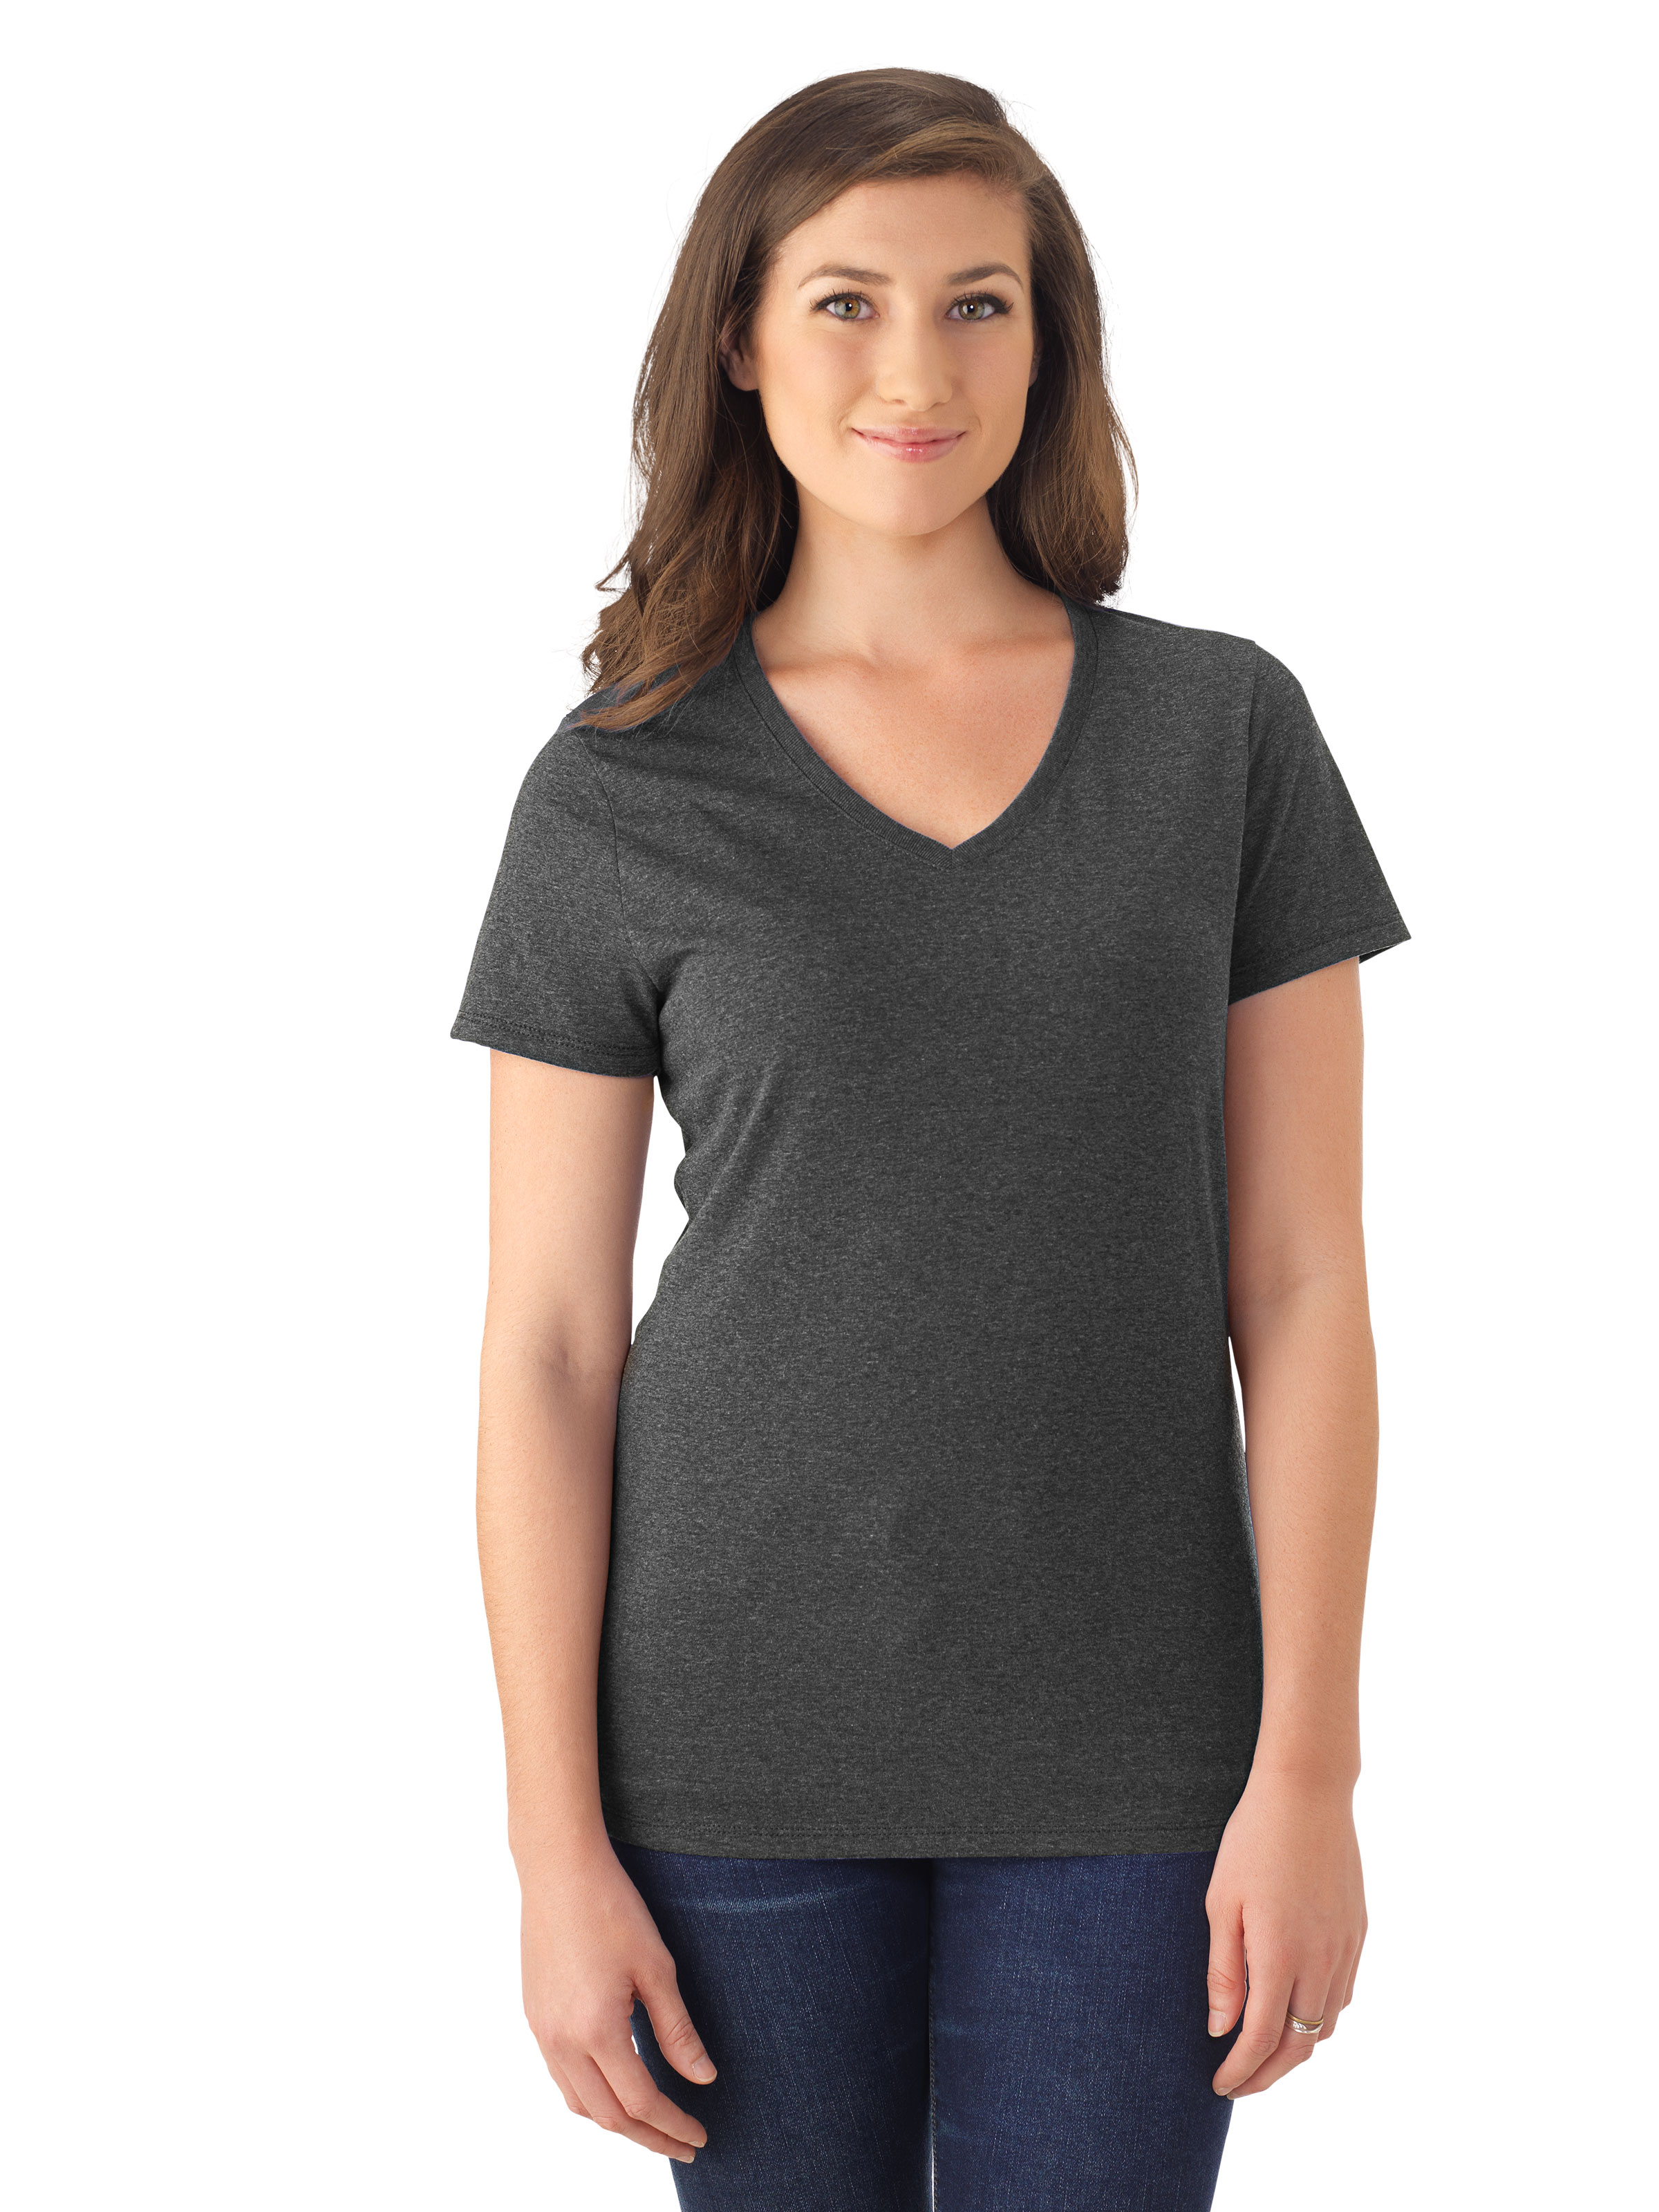 JERZEES® 601WVR TRI-BLEND Ladies' V-Neck T-Shirt